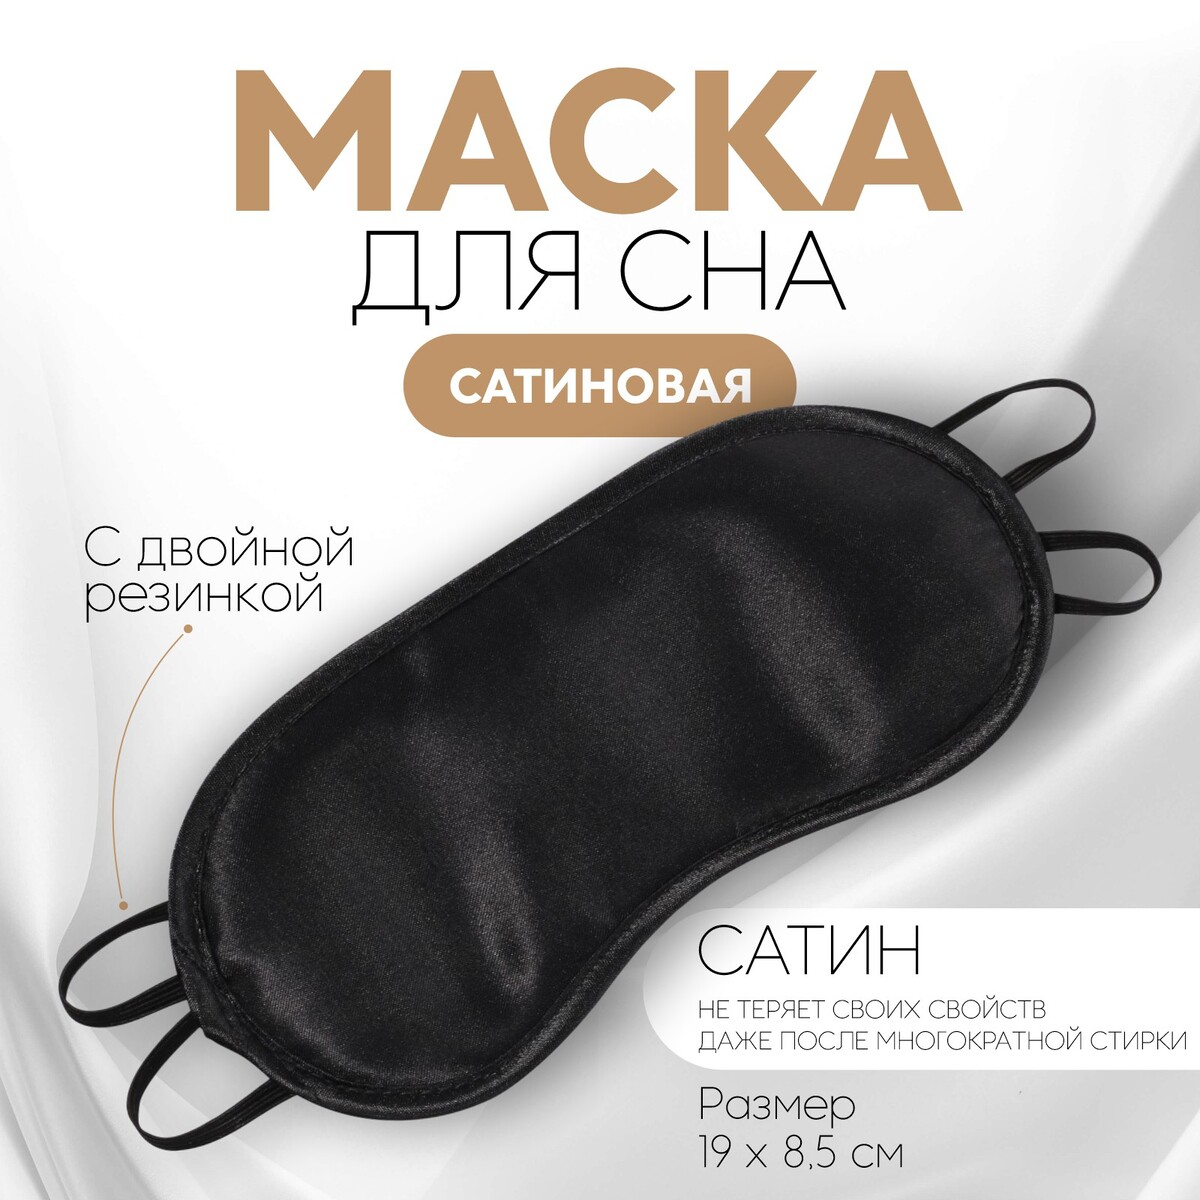 Маска для сна, сатиновая, двойная резинка, 19 × 8,5 см, цвет черный